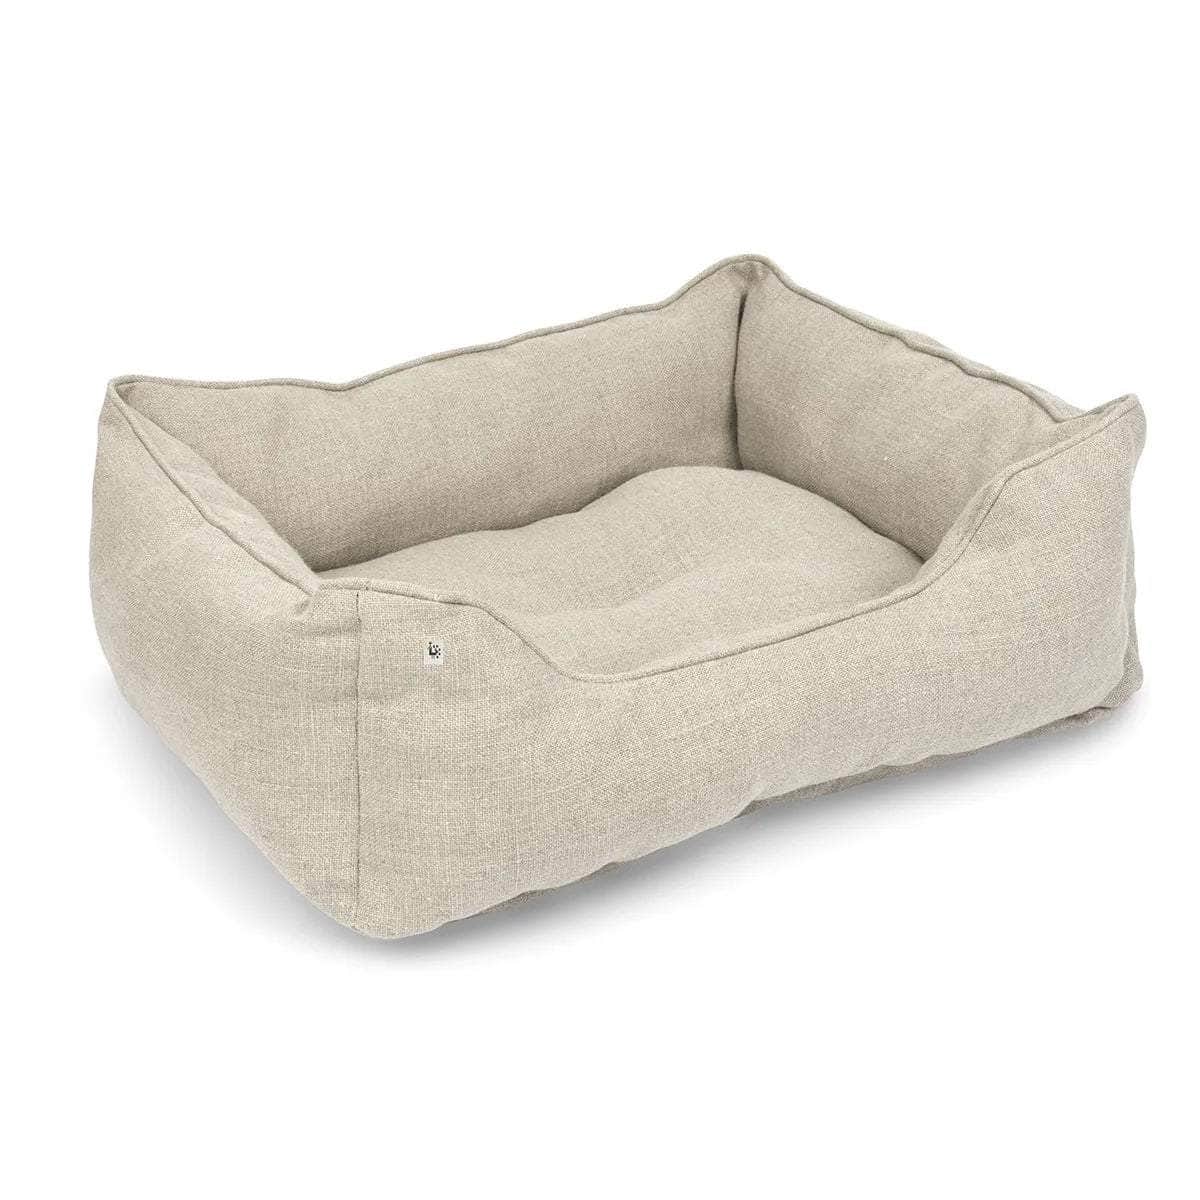 Medium Dog Bed